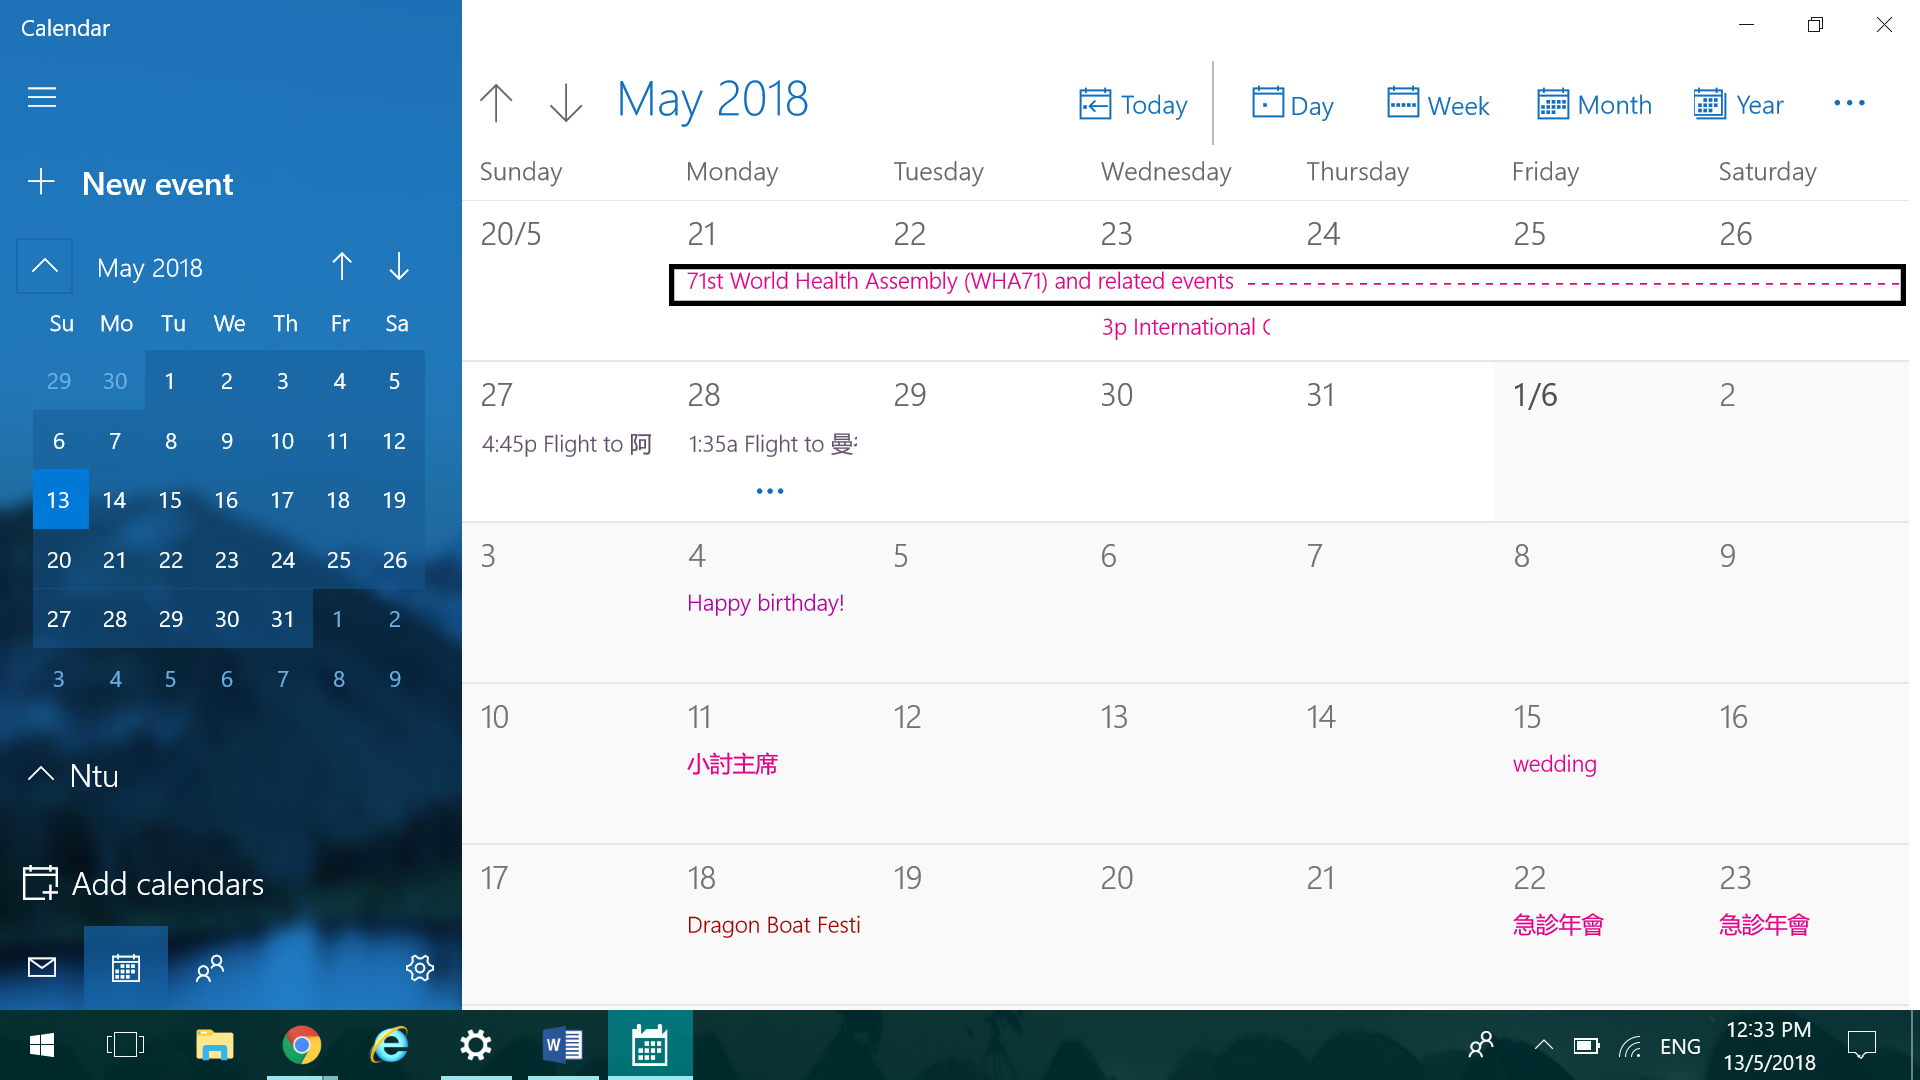 Windows 10 Calendar - Color Code Events 81f3dc41-699a-4277-ba07-4015e9bcb990?upload=true.png